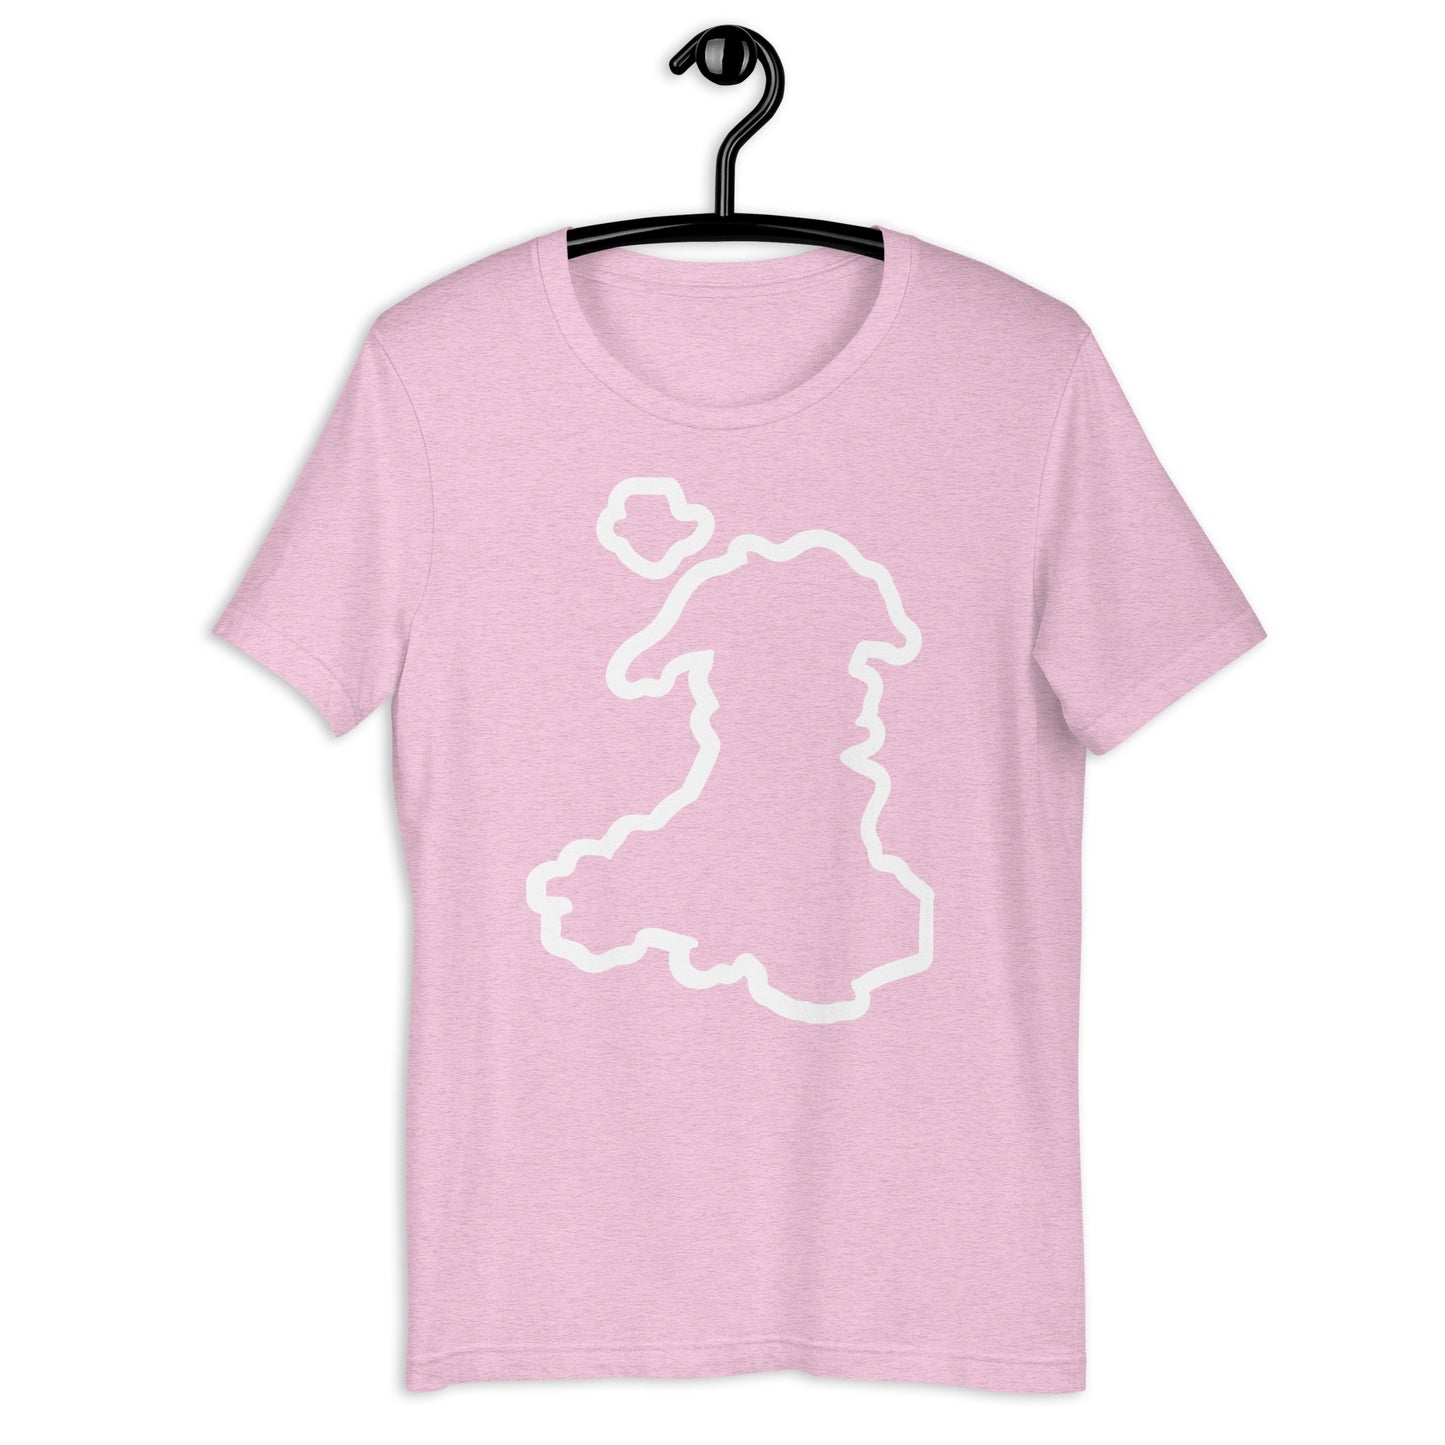 Cymru/Wales - Unisex t-shirt